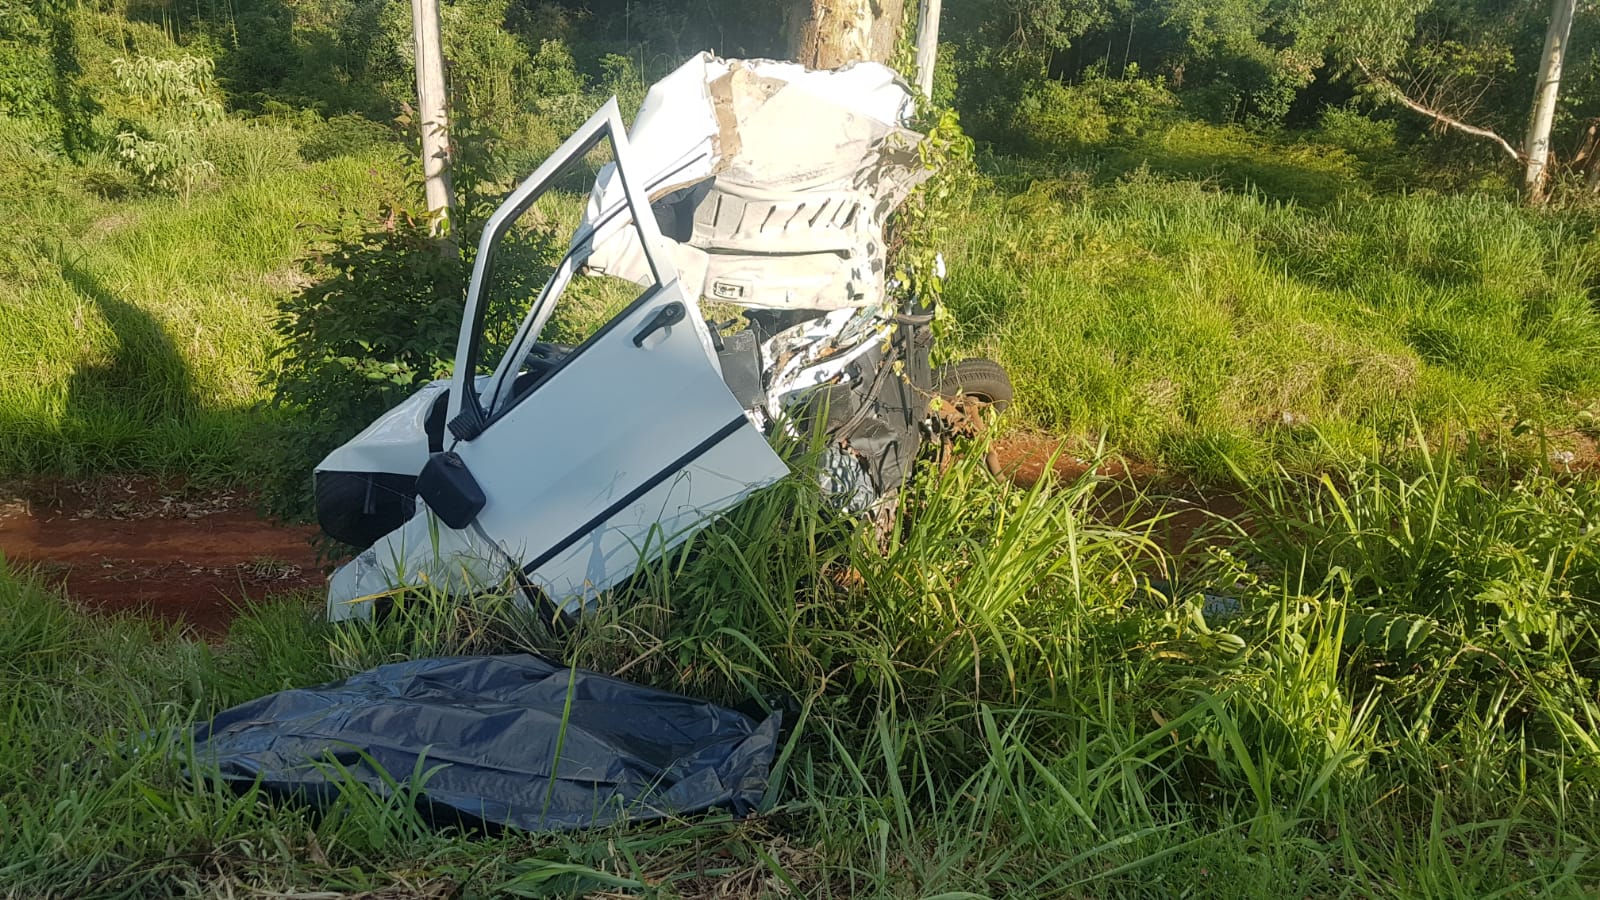 Condutor de carro morre em violenta colisão contra árvore às margens da BR-369, em Cascavel